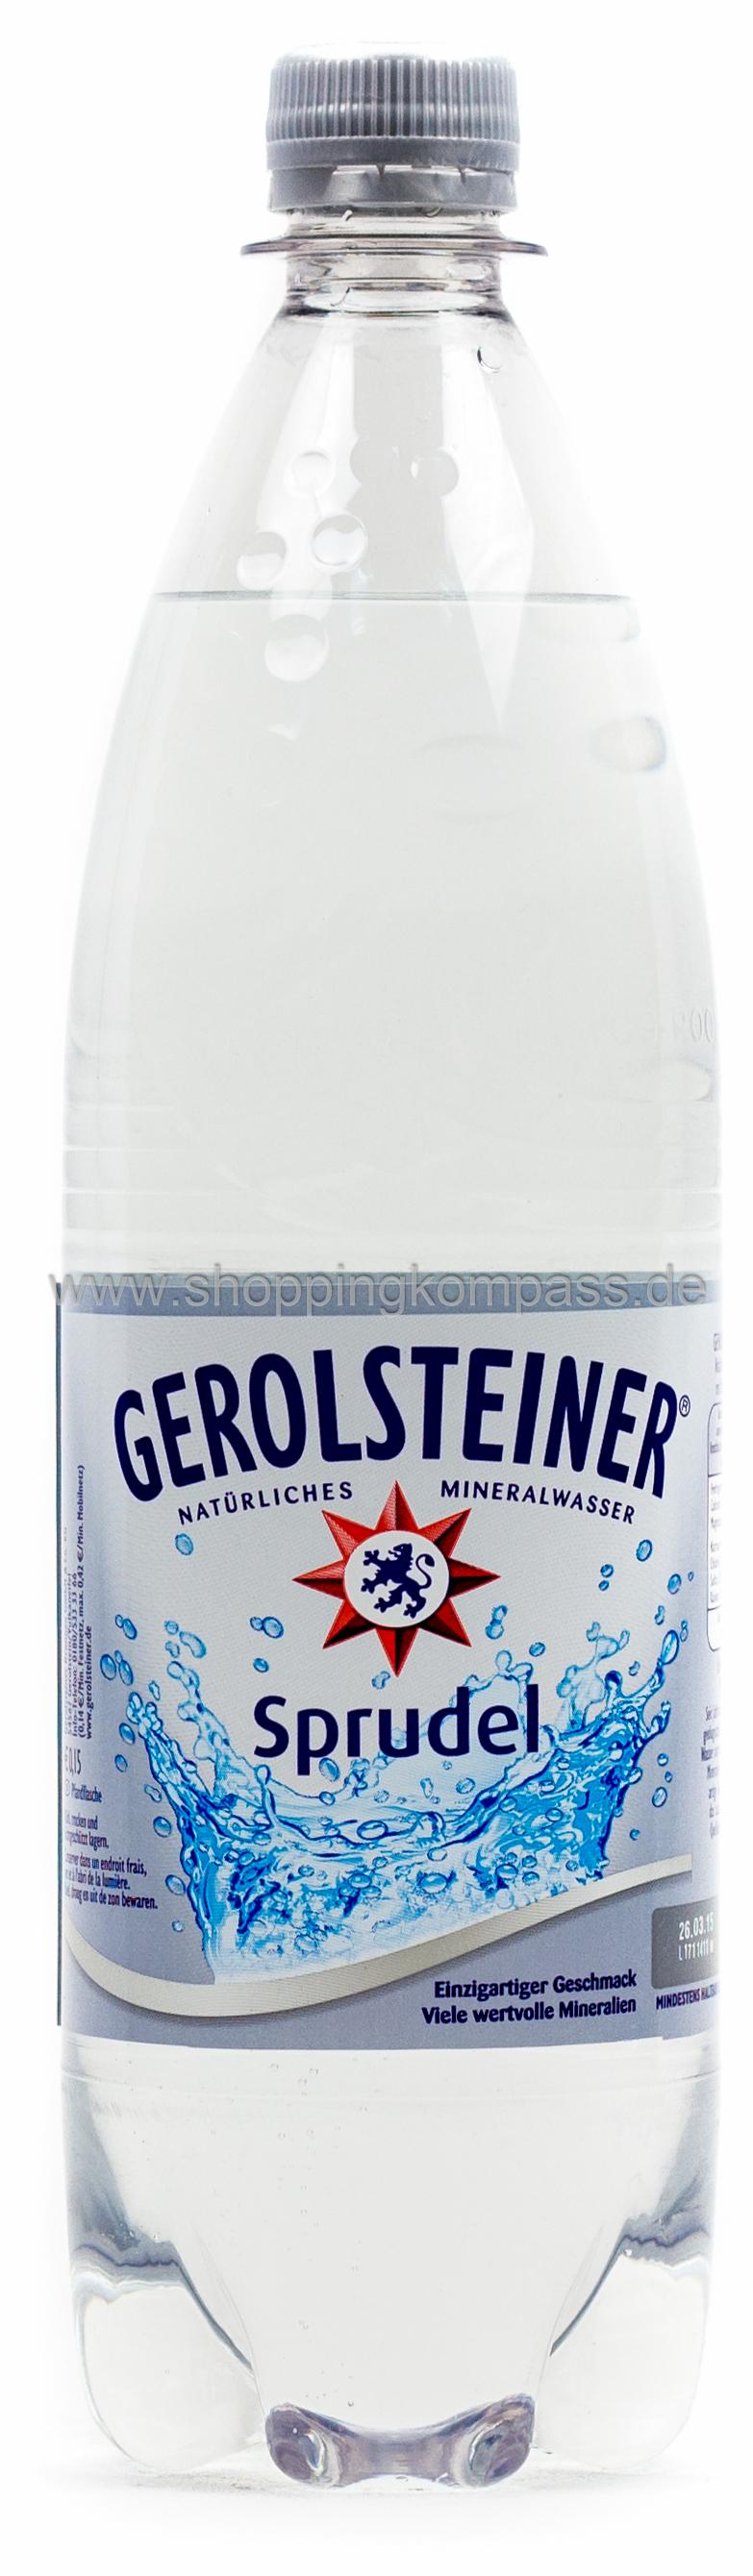 Gerolsteiner Mineralwasser Sprudel Kasten 12 x 1 l PET Mehrweg